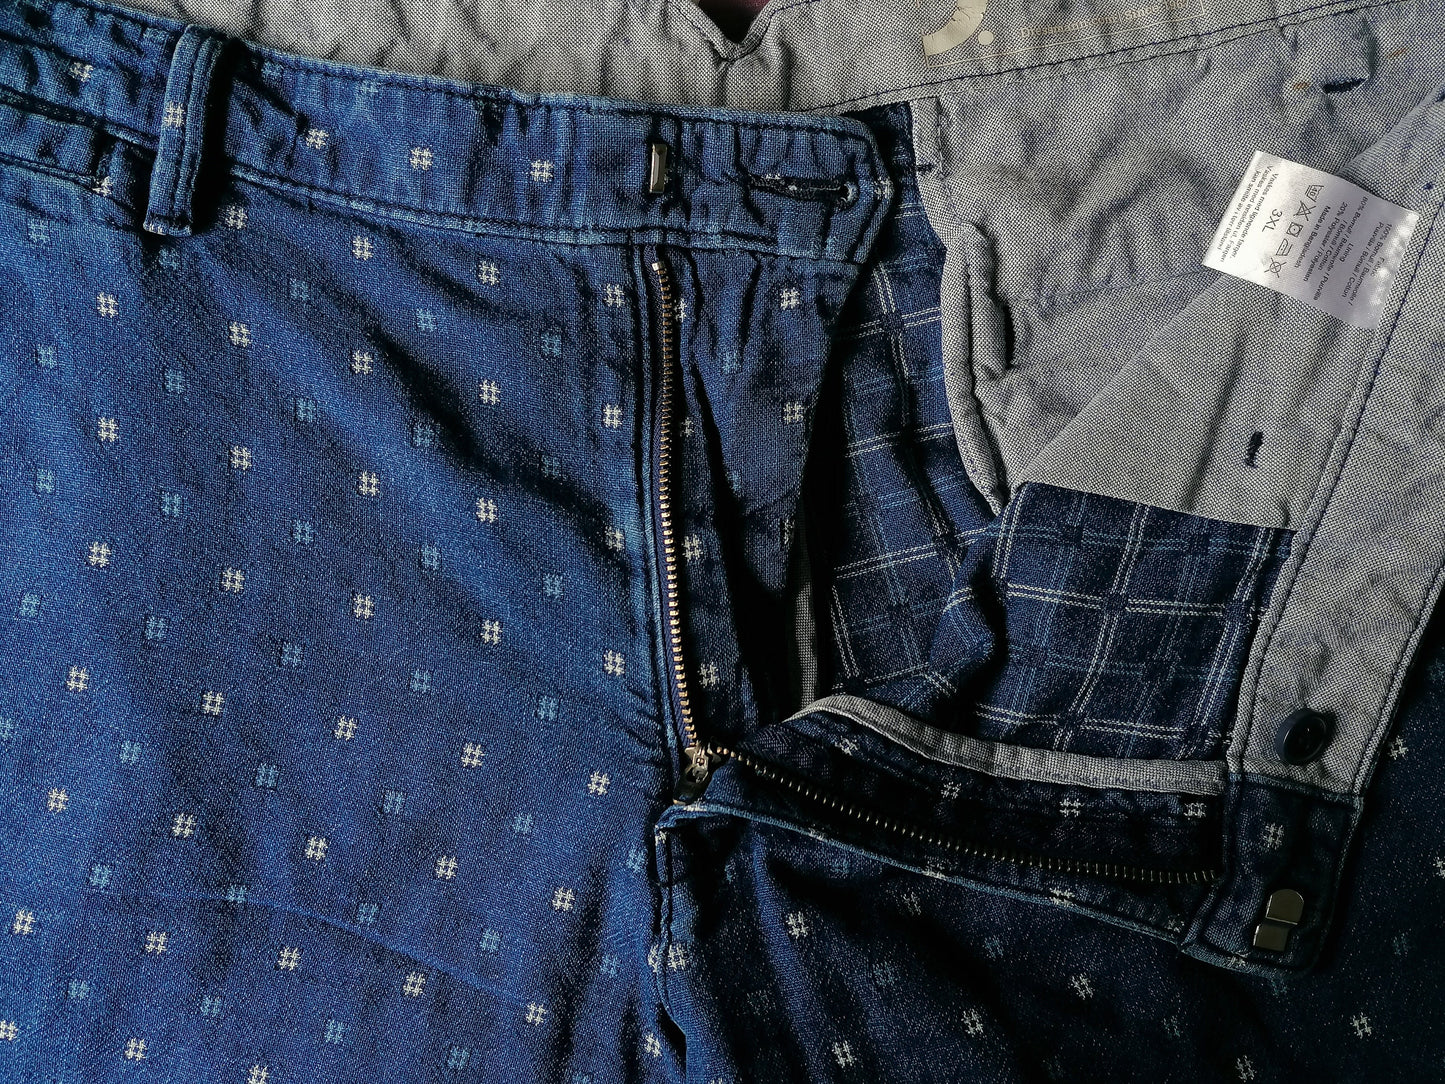 Dressmann shorts. Blue white motif. Size XXXL / 3XL / 60.